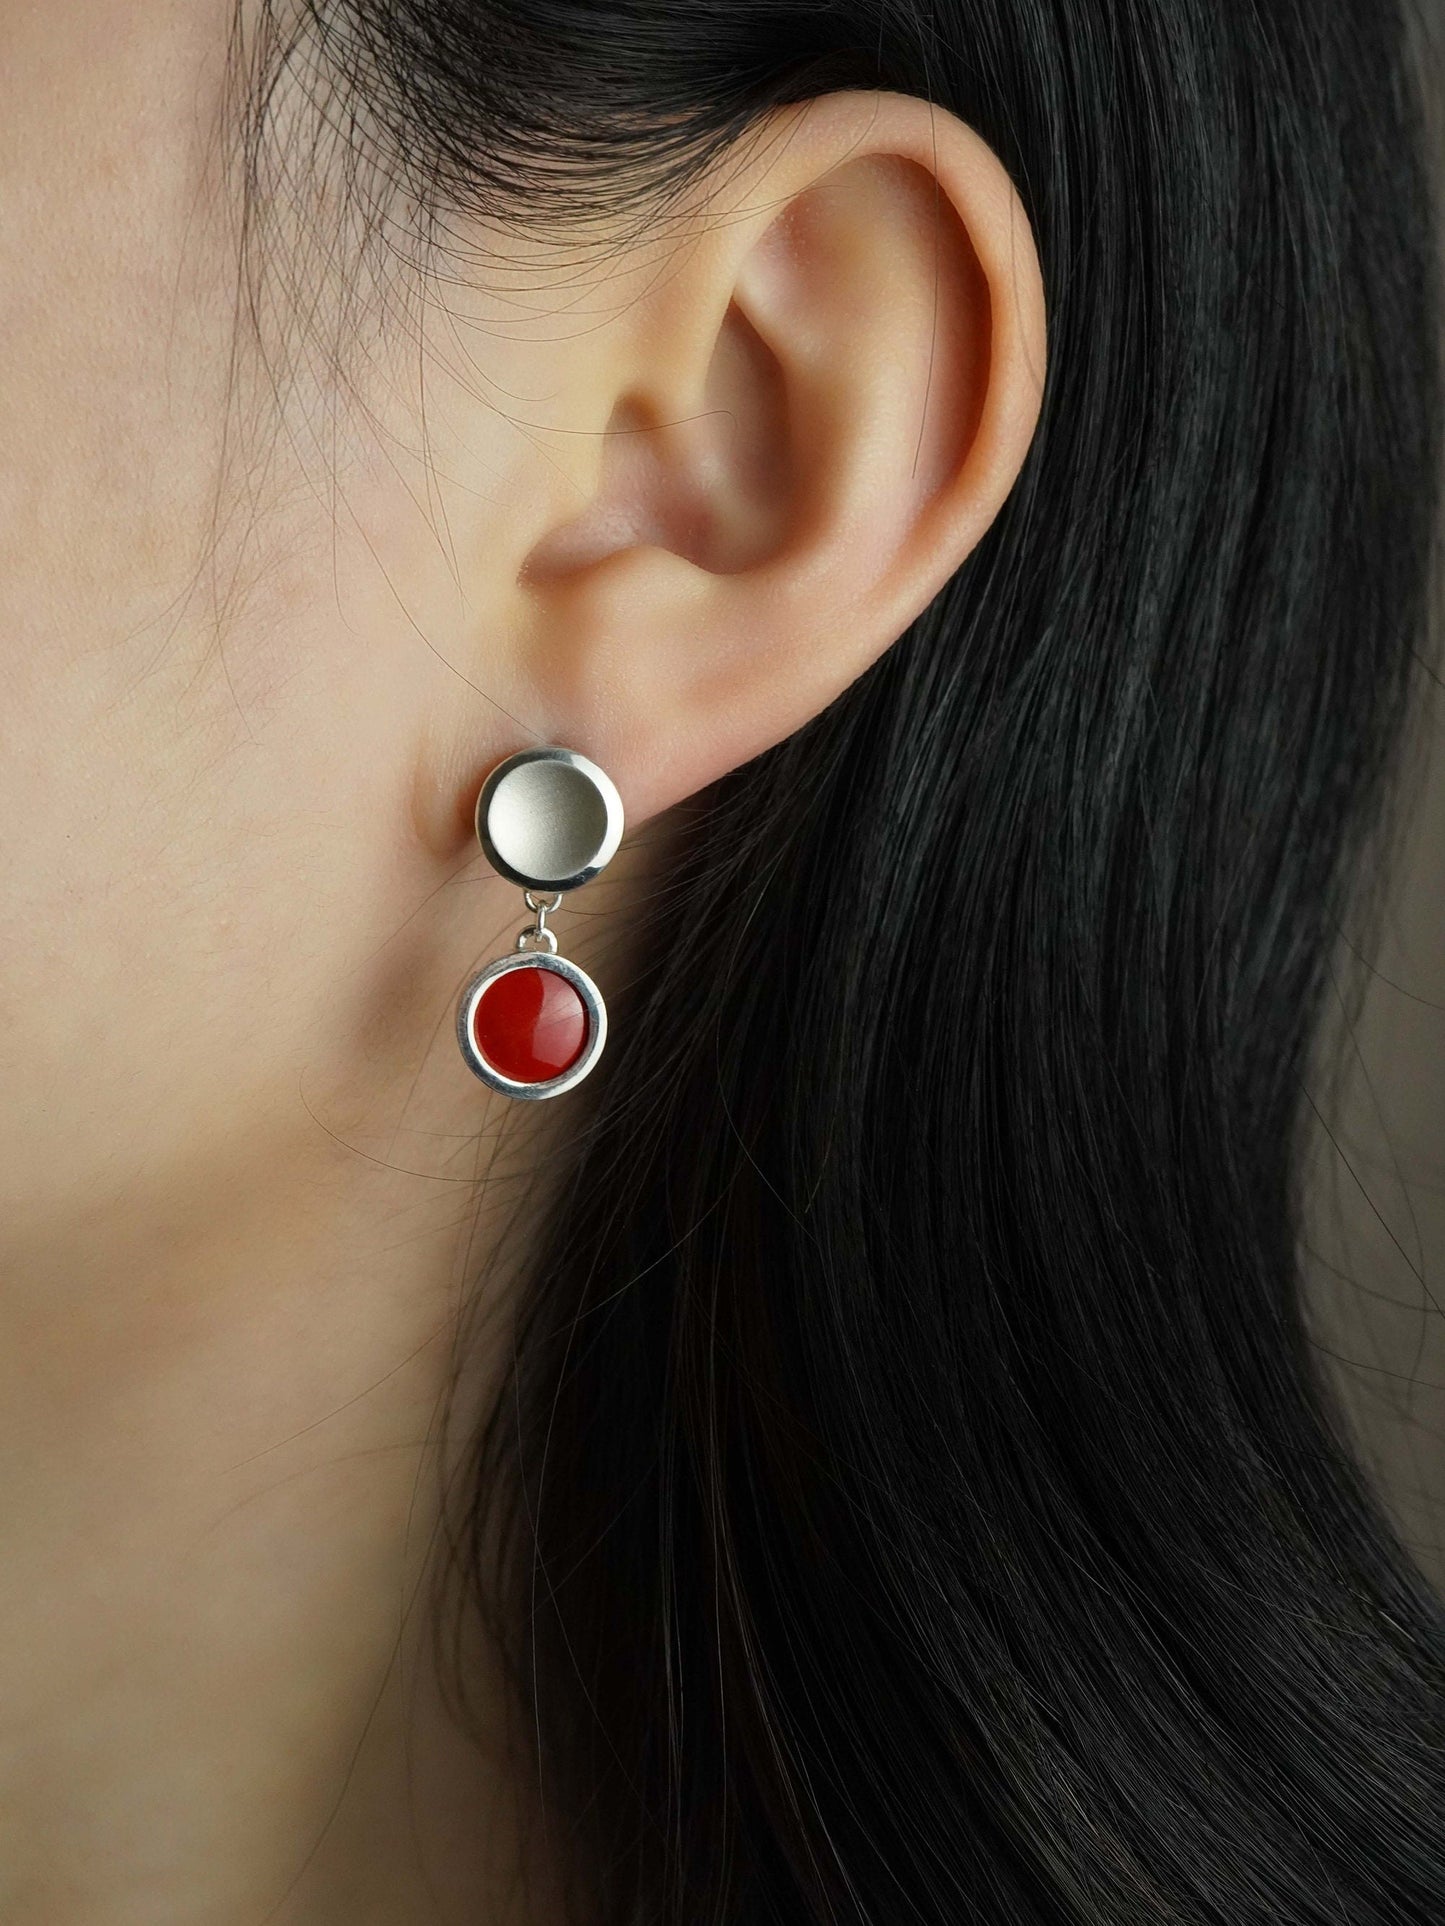 Vitreous Enamel Earring | Everyday Drop Earrings| Sterling Silver Earring｜Flame Red Dainty Earrings| Asymmetrical Earrings | Minimal Earring